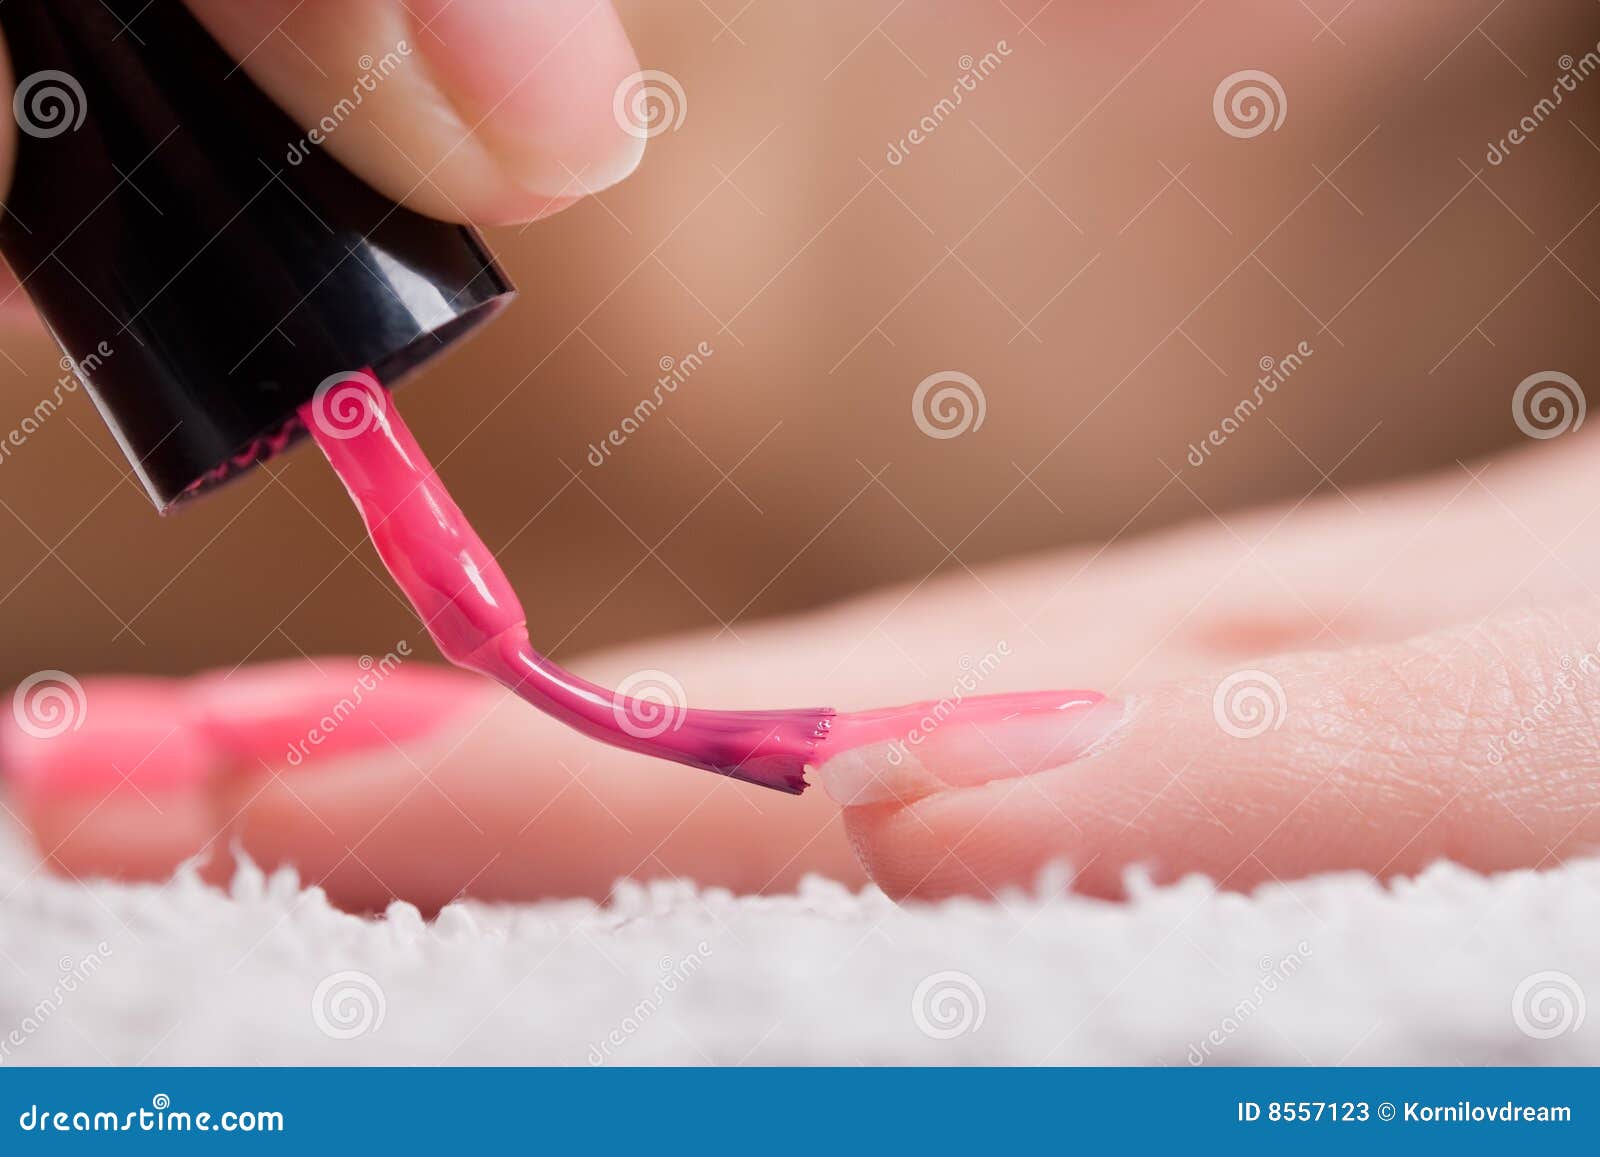 red nail polish